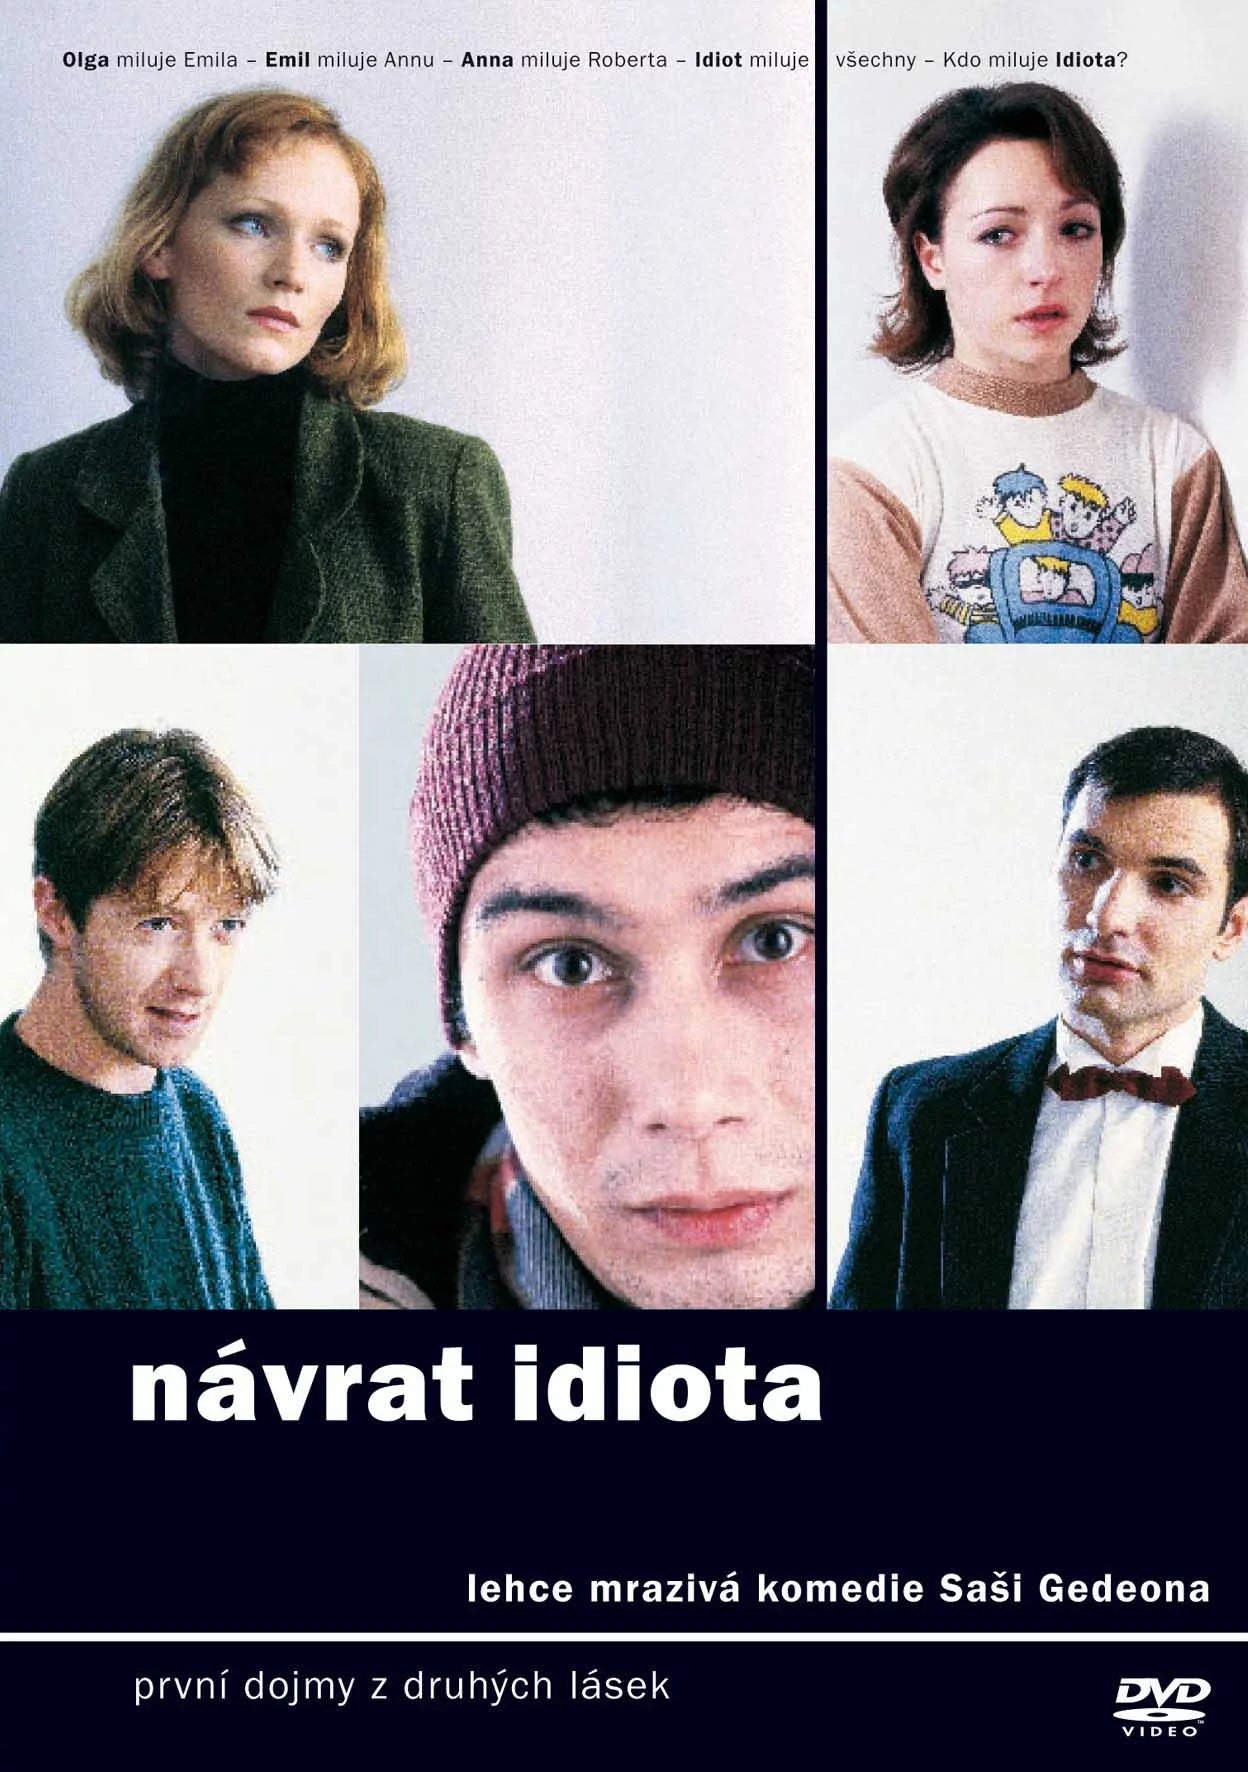 The Idiot Returns / Navrat Idiota DVD